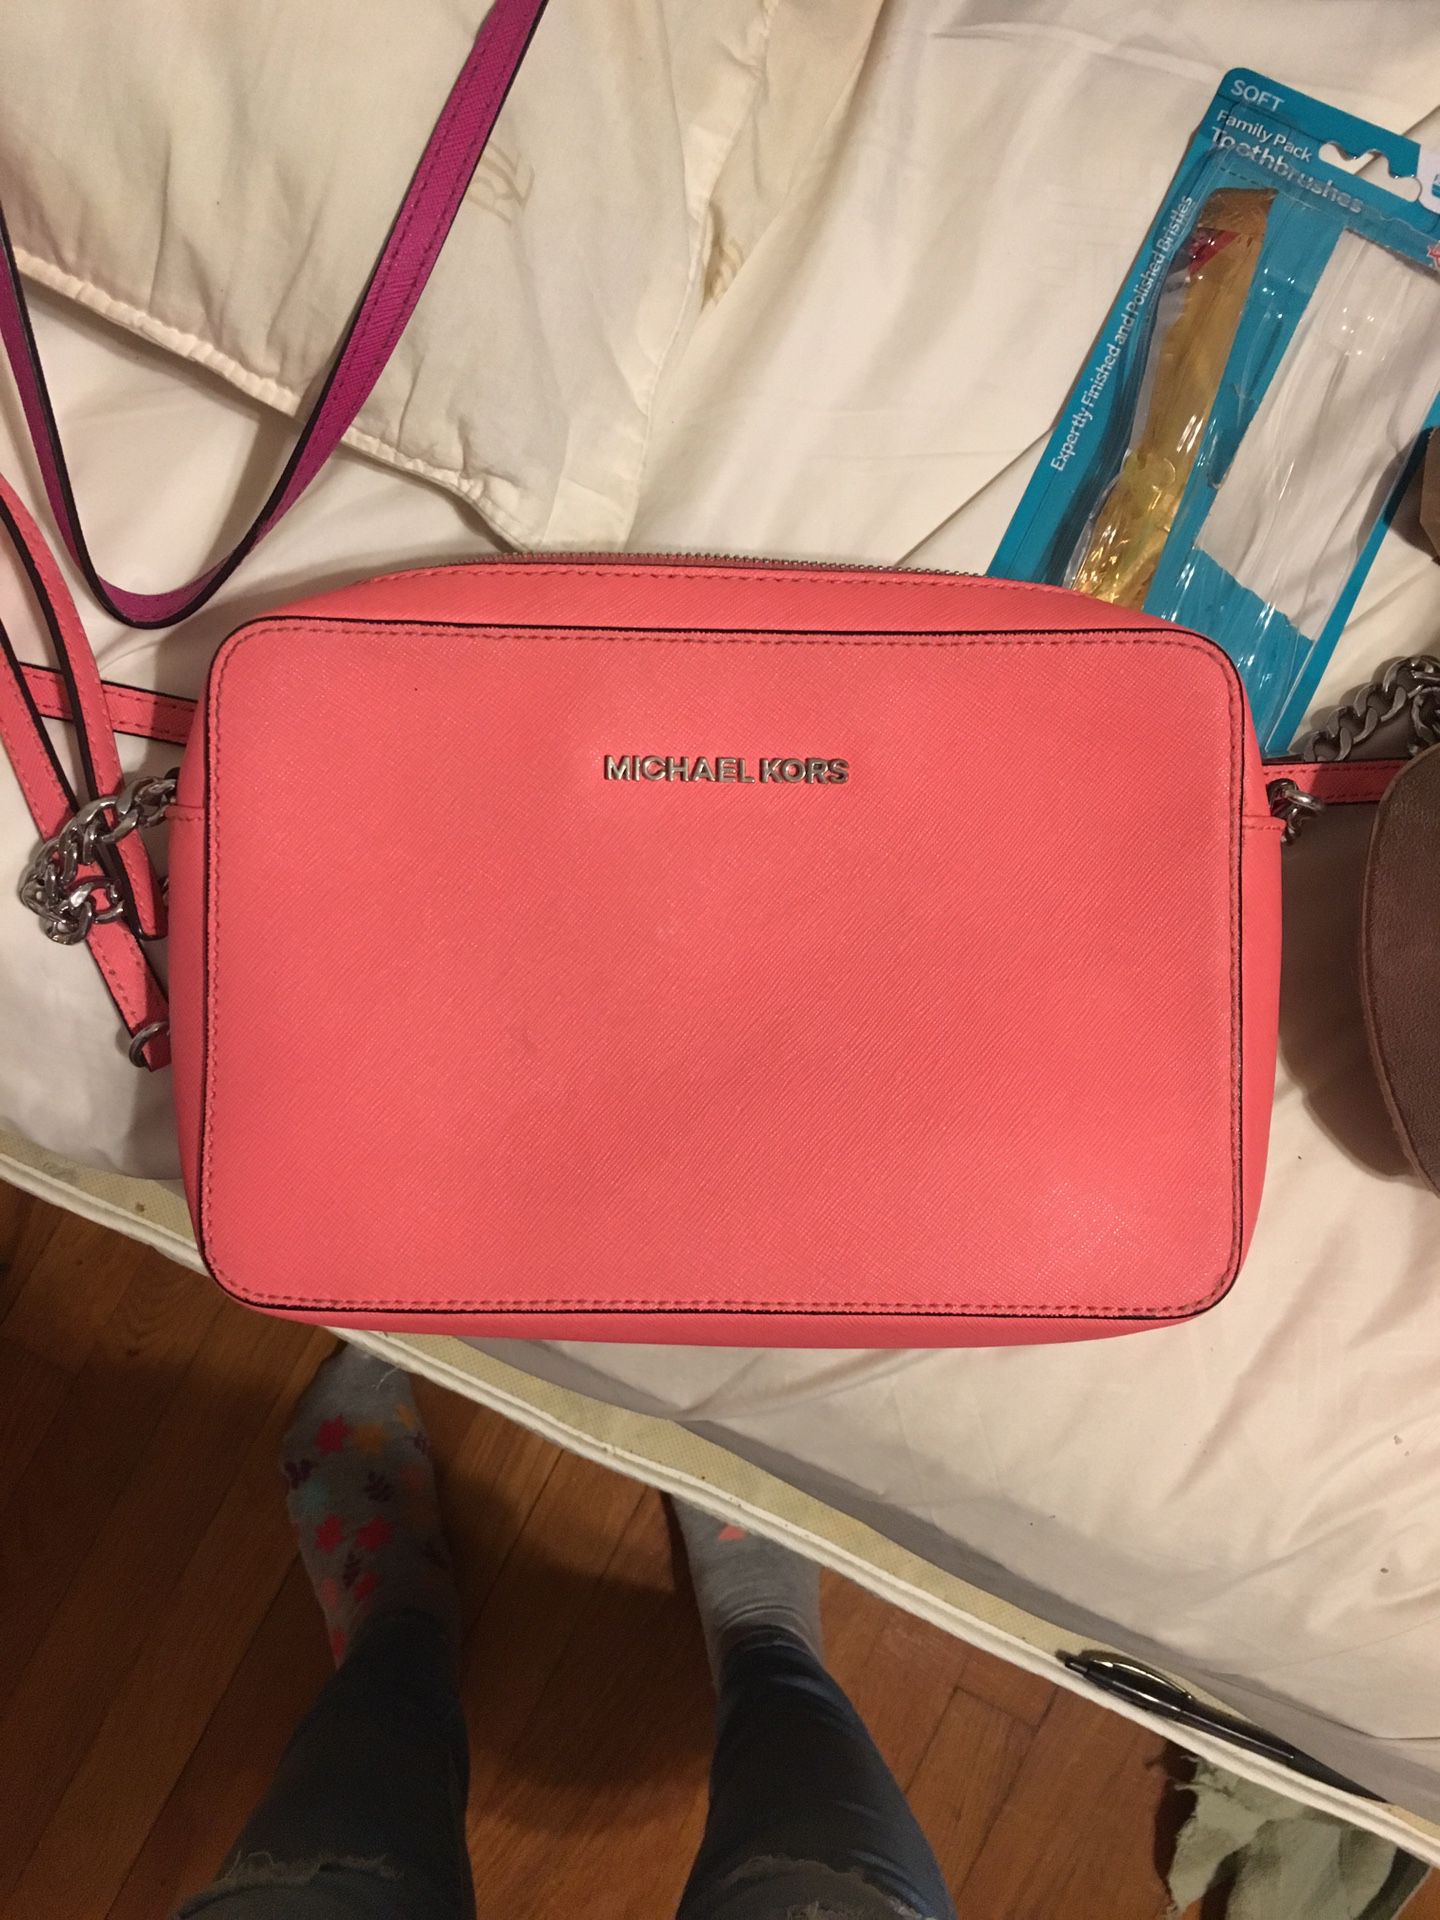 Michael Kors Pink Square Shoulder Handbag